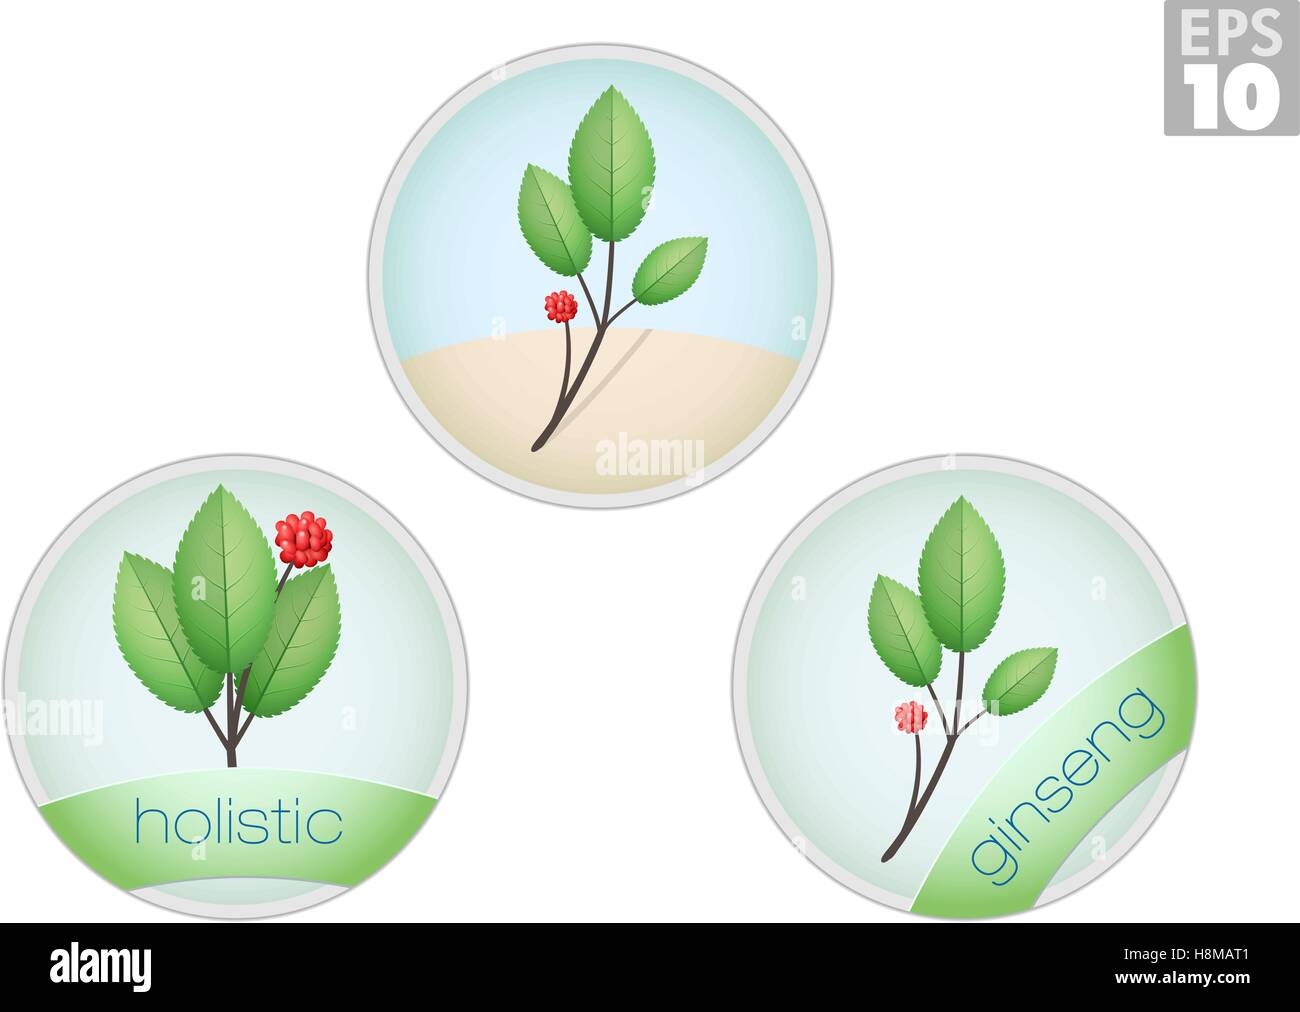 Approche holistique, le ginseng plante, icônes de médecine alternative Illustration de Vecteur